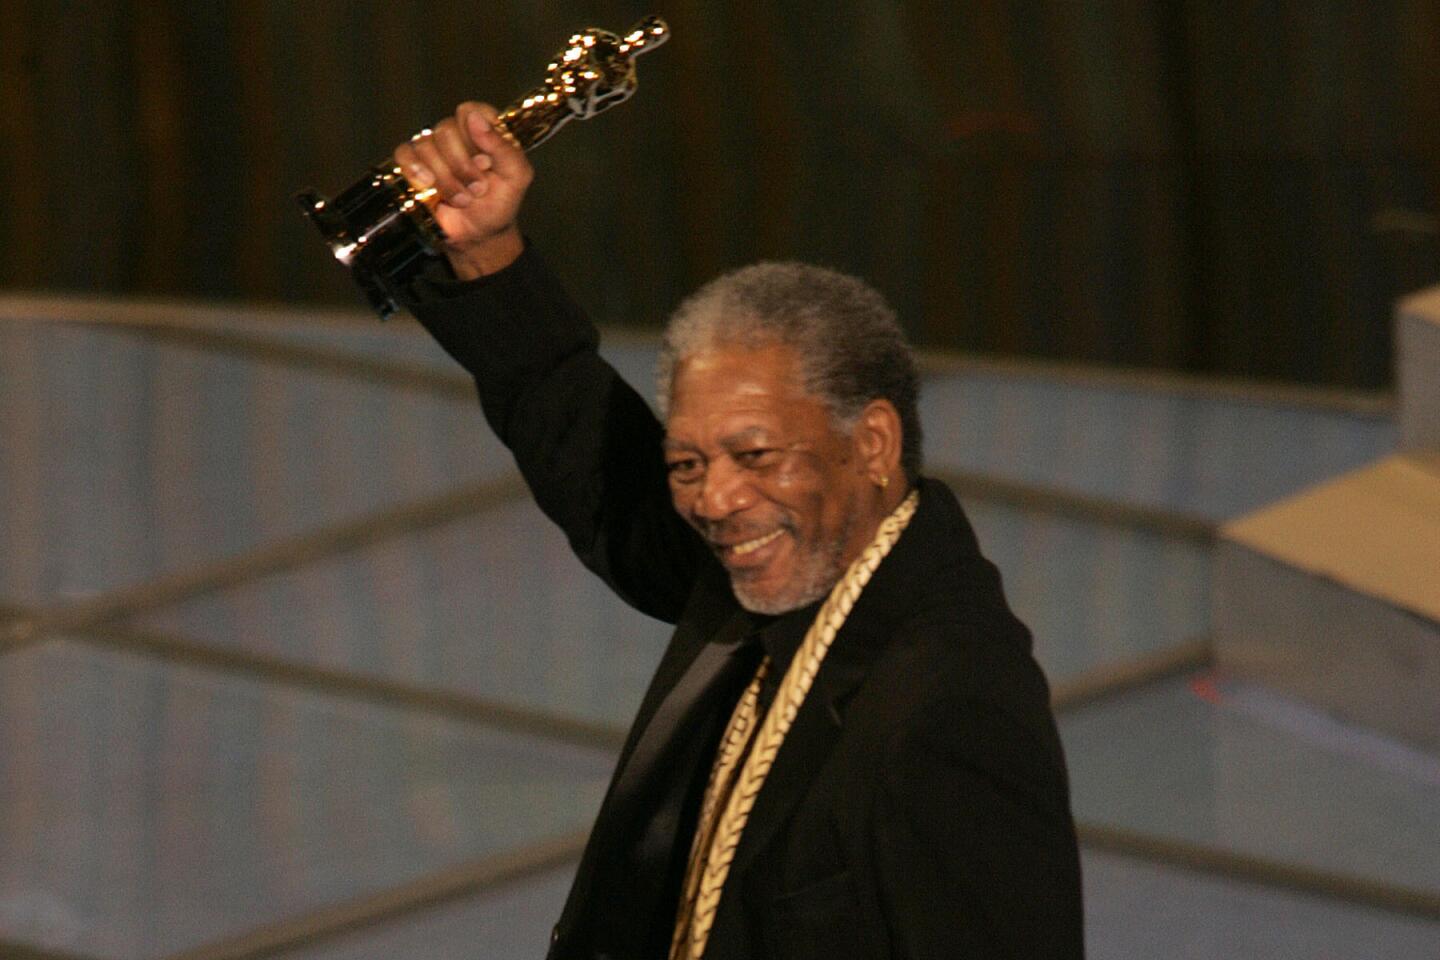 Morgan Freeman at the Oscars